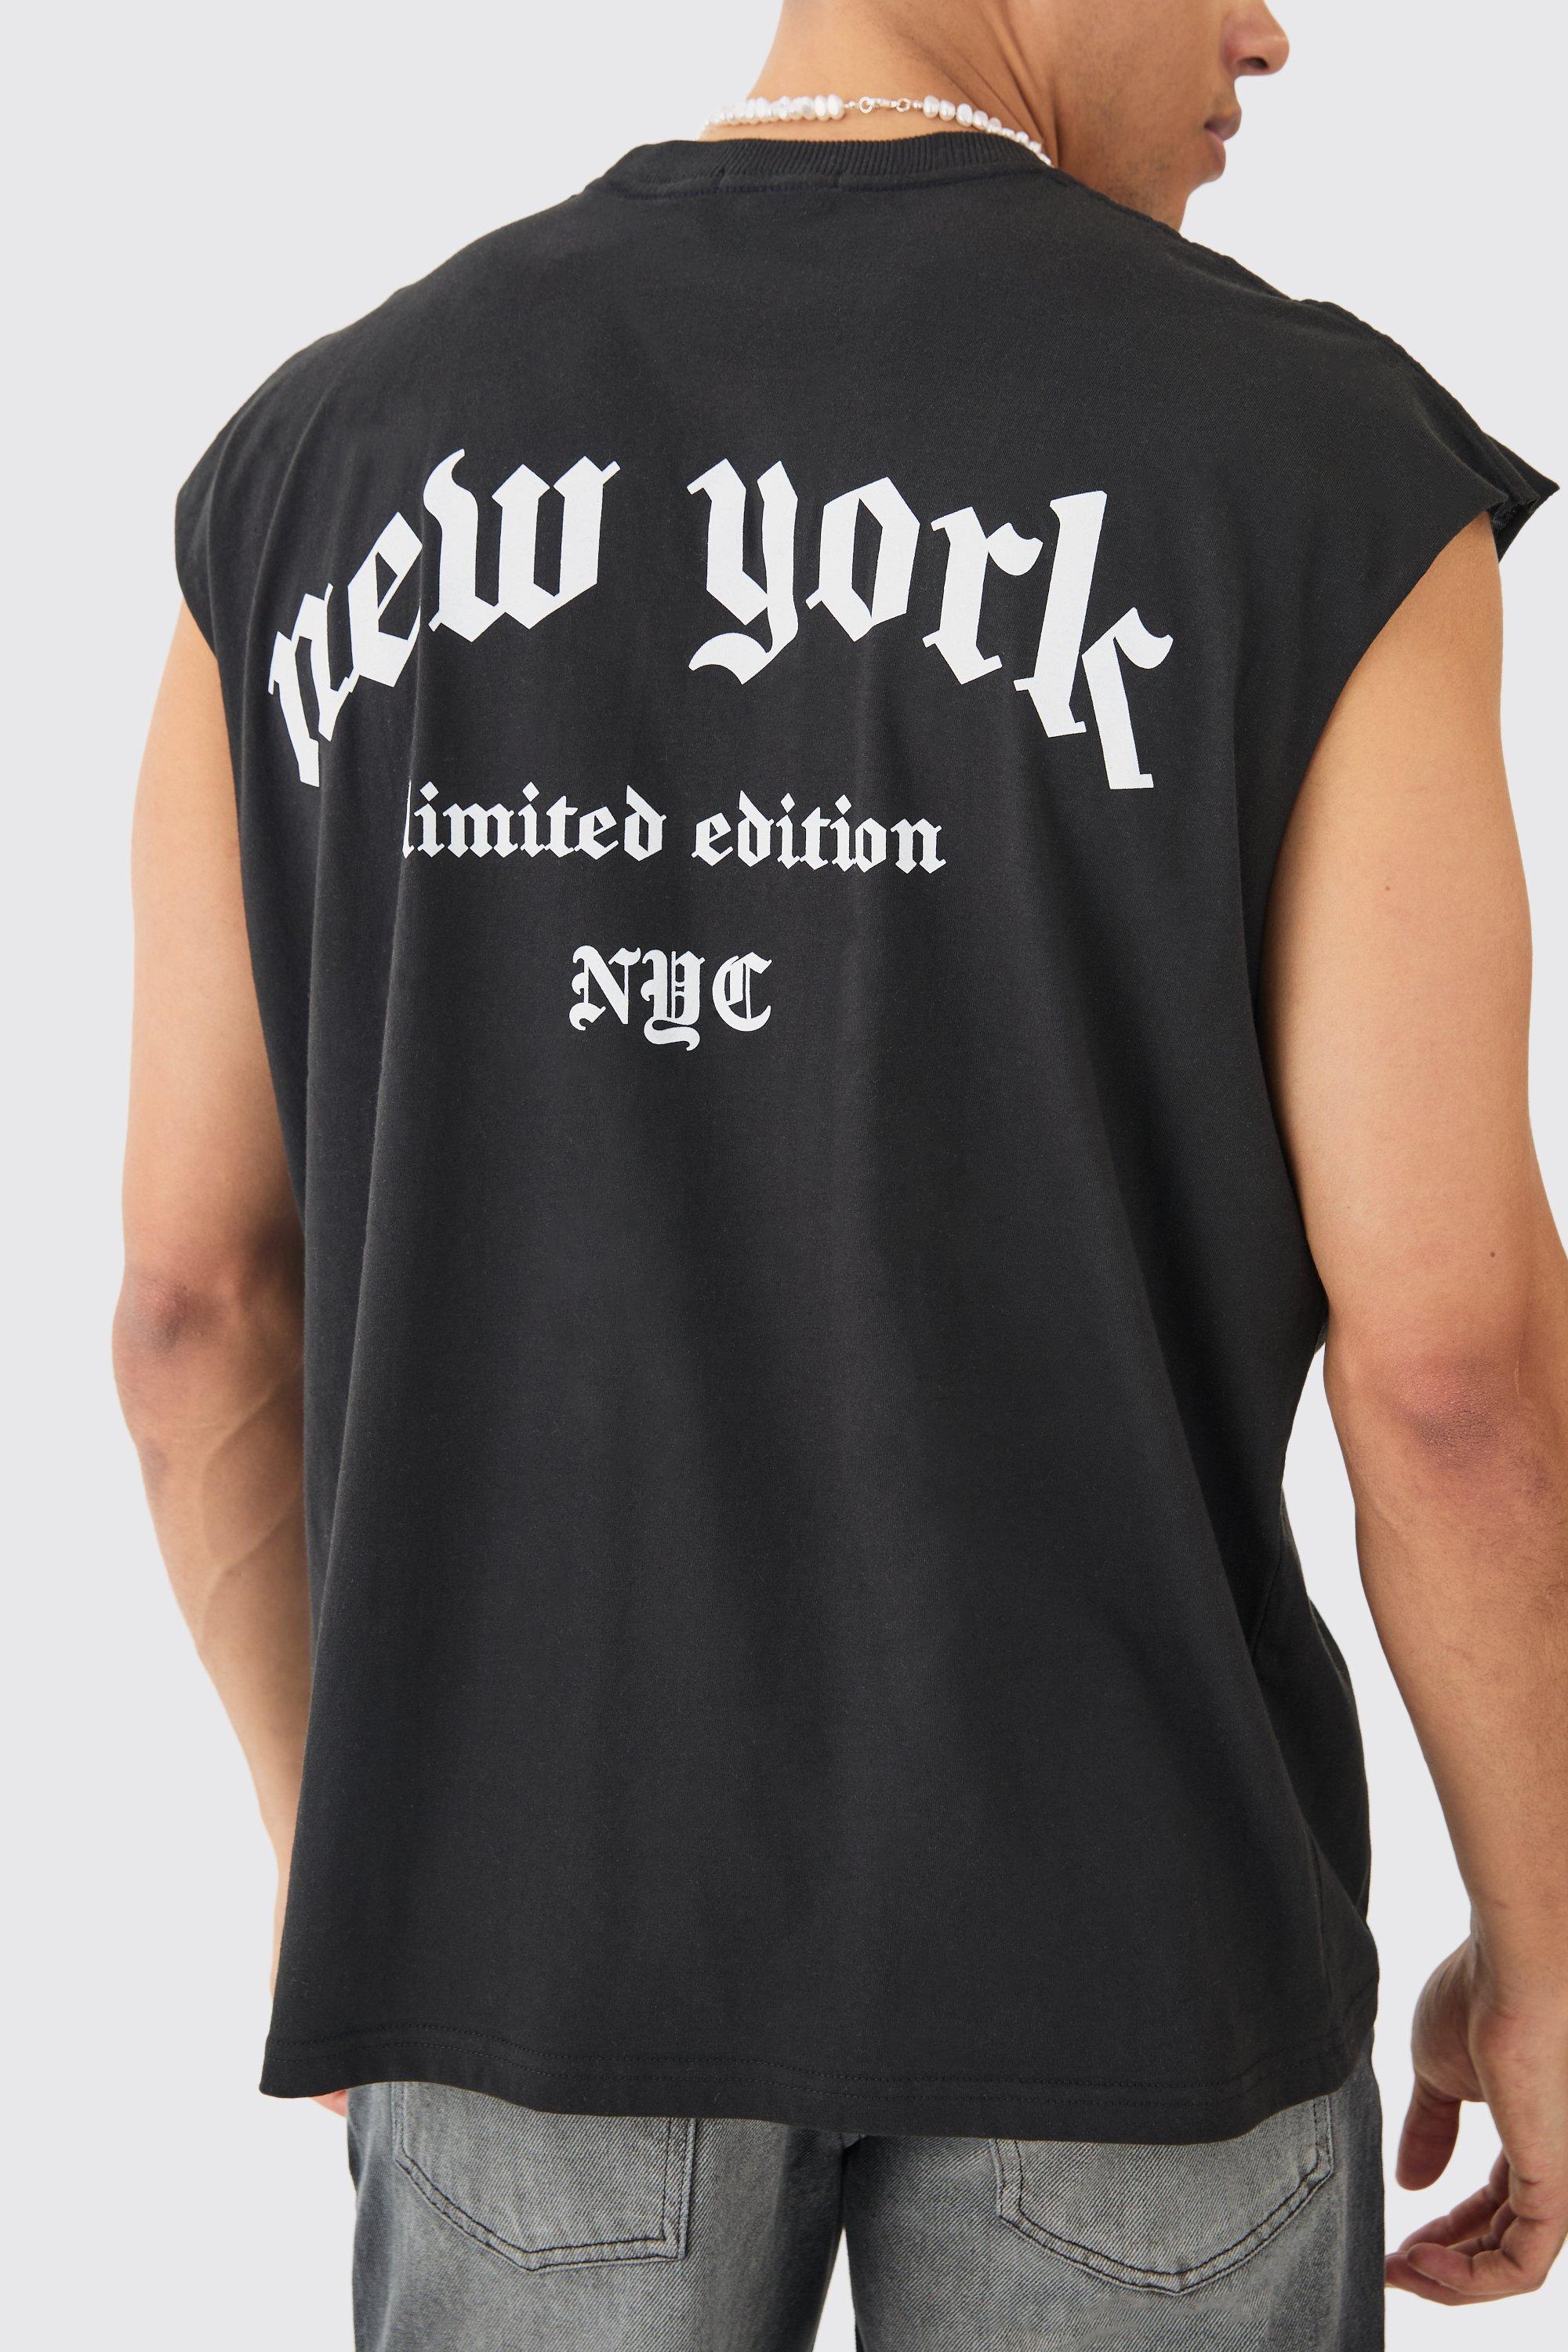 Mens Black Oversized New York Text vest, Black